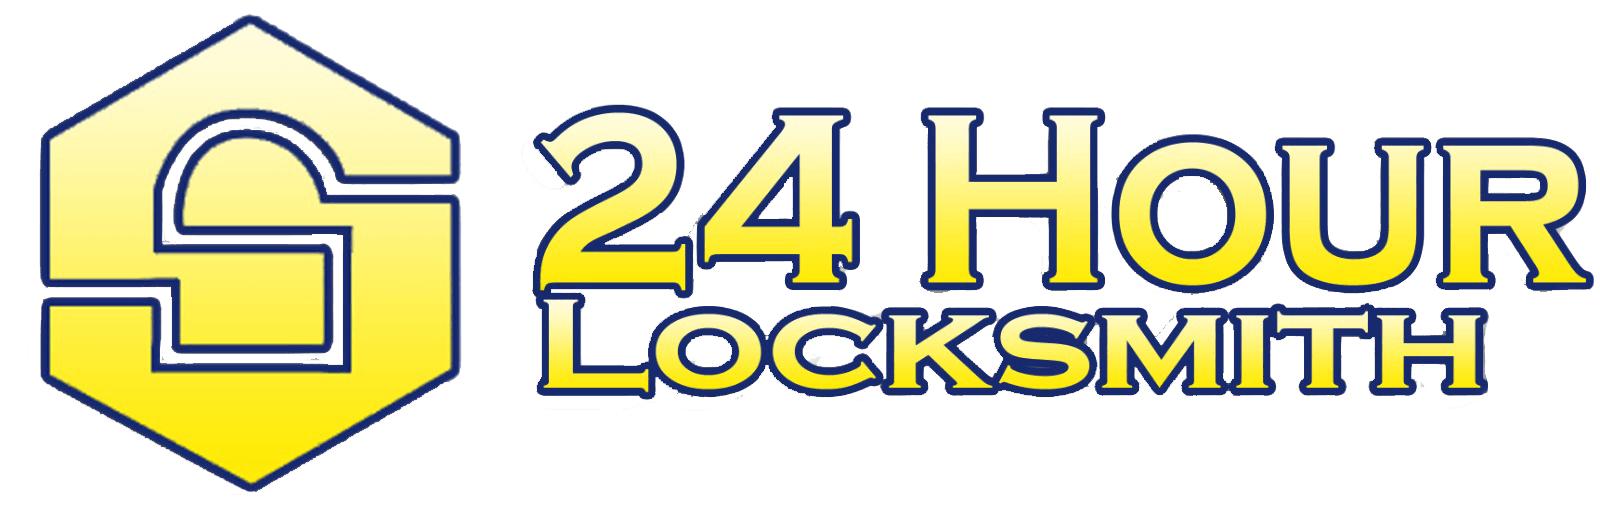 24 Hour Locksmith in Louisville, KY